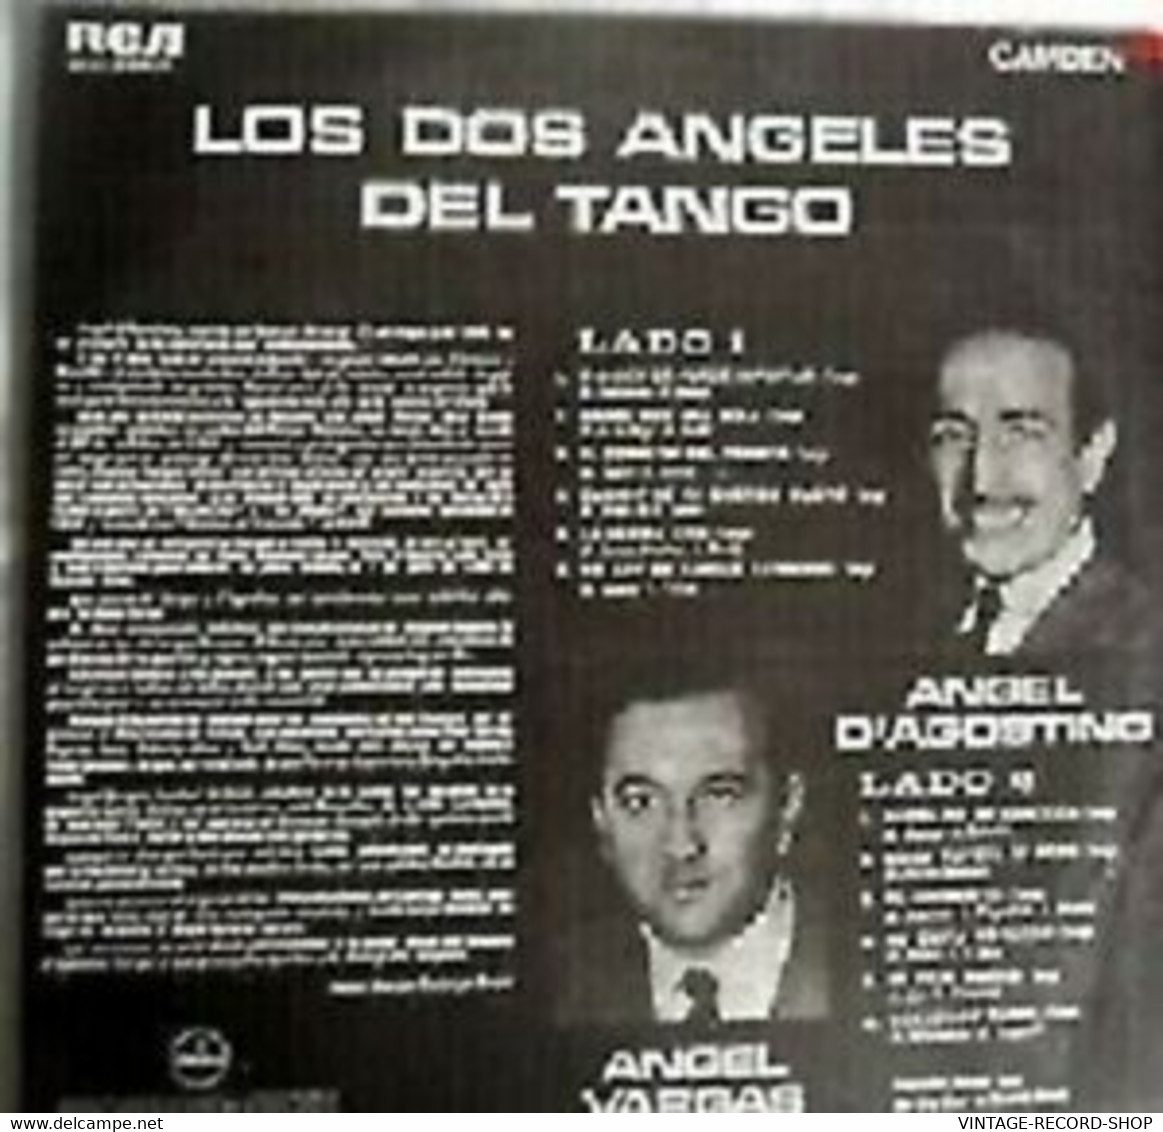 ANGEL DAGOSTINO ANGEL VARGAS-LOS DOS ANGELES DEL TANGO CAMDEN/RCA - Autres - Musique Espagnole